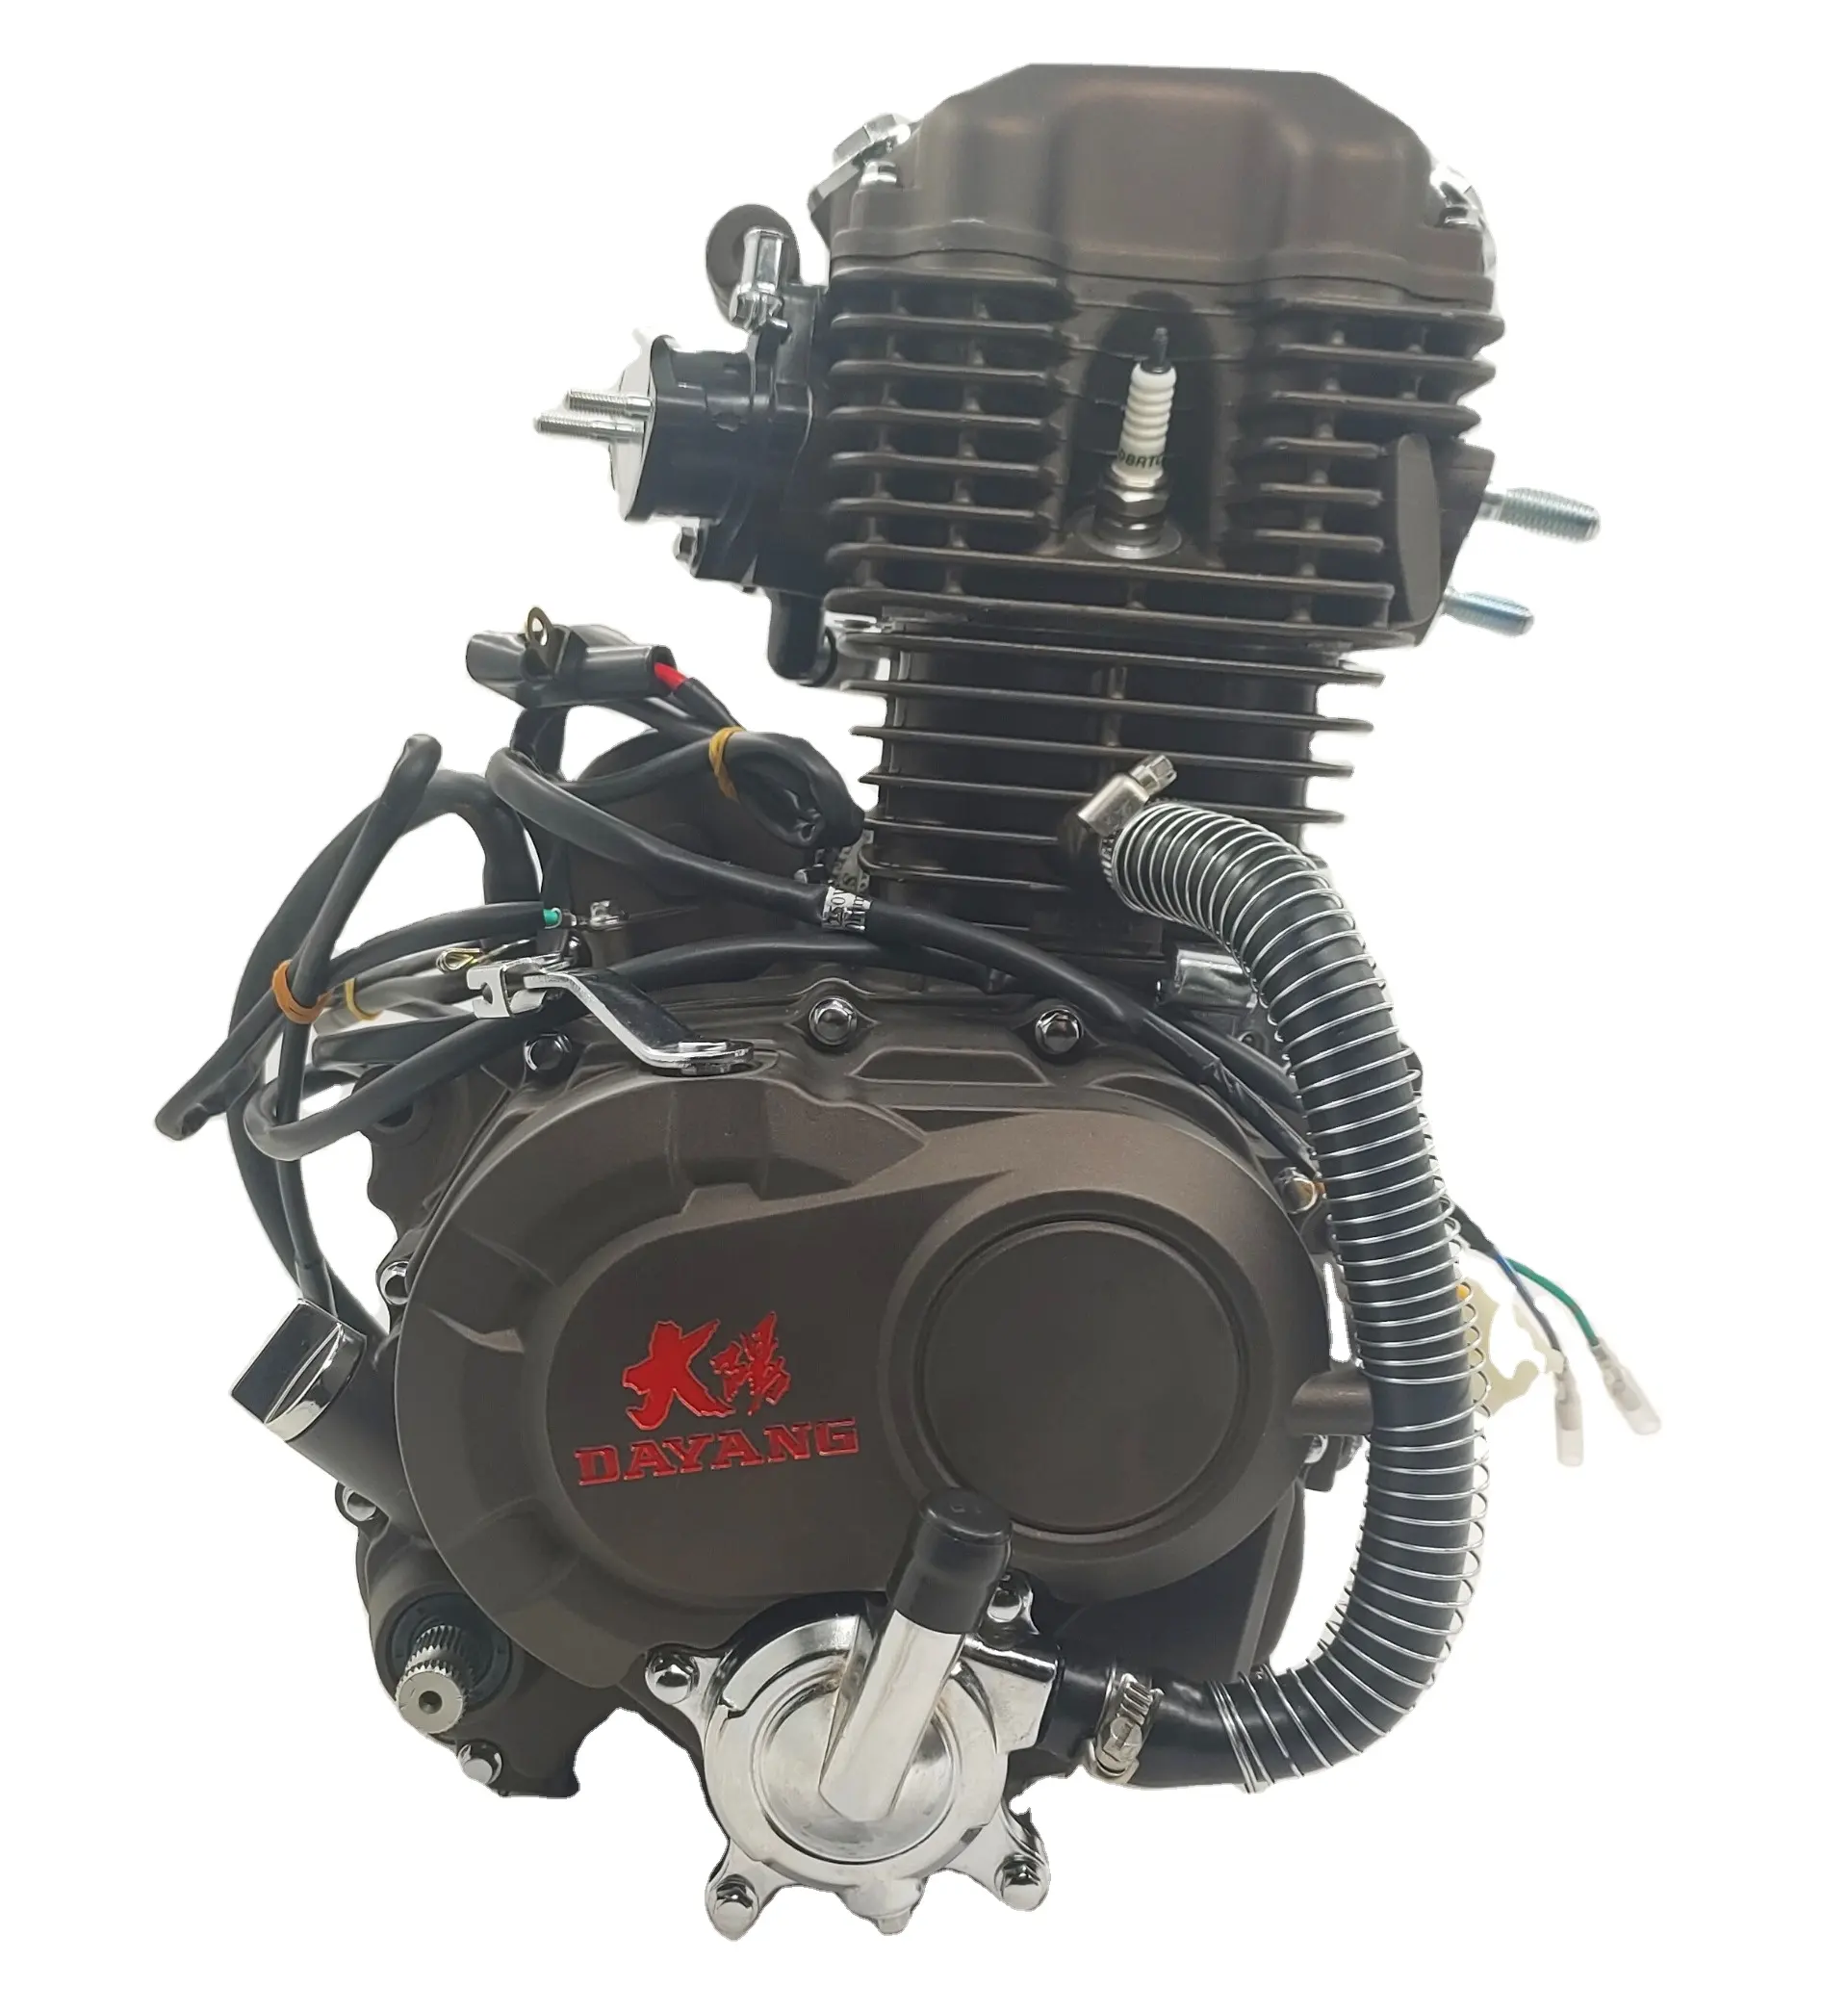 CG200 200cc yeni süper serin DAYANG LIFAN motor tek silindirli stil elektrikli/Kick yöntemi kökenli tipi yüksek kalite çin'de